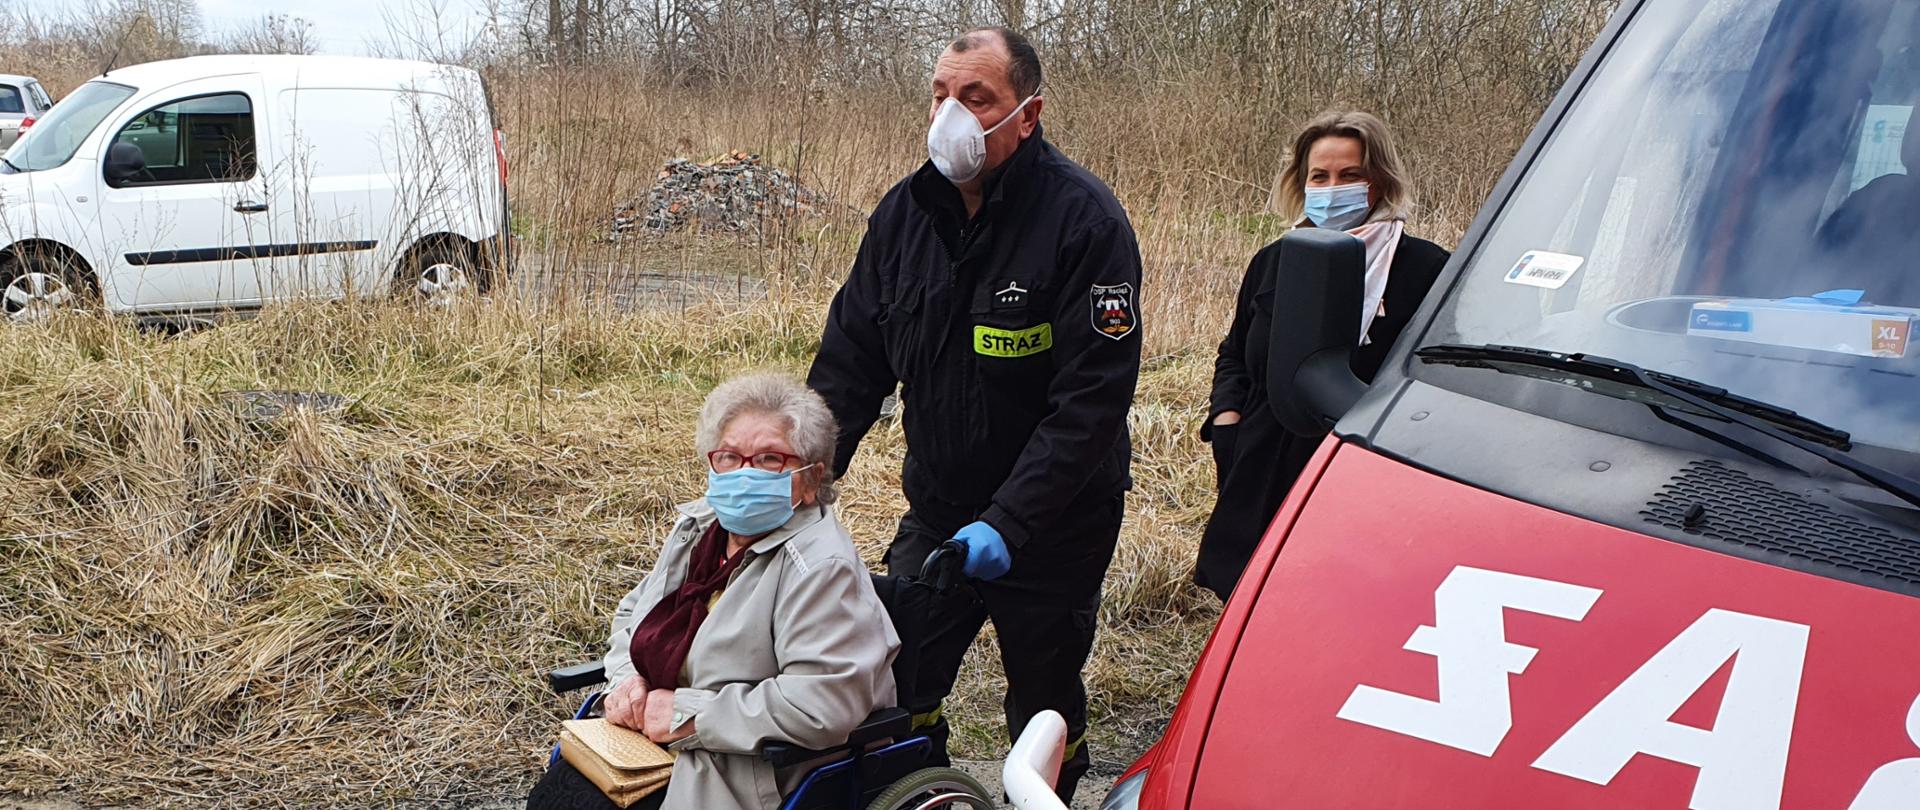 Na zdjęciu strażak pomaga osobie starszej na wózku inwalidzkim